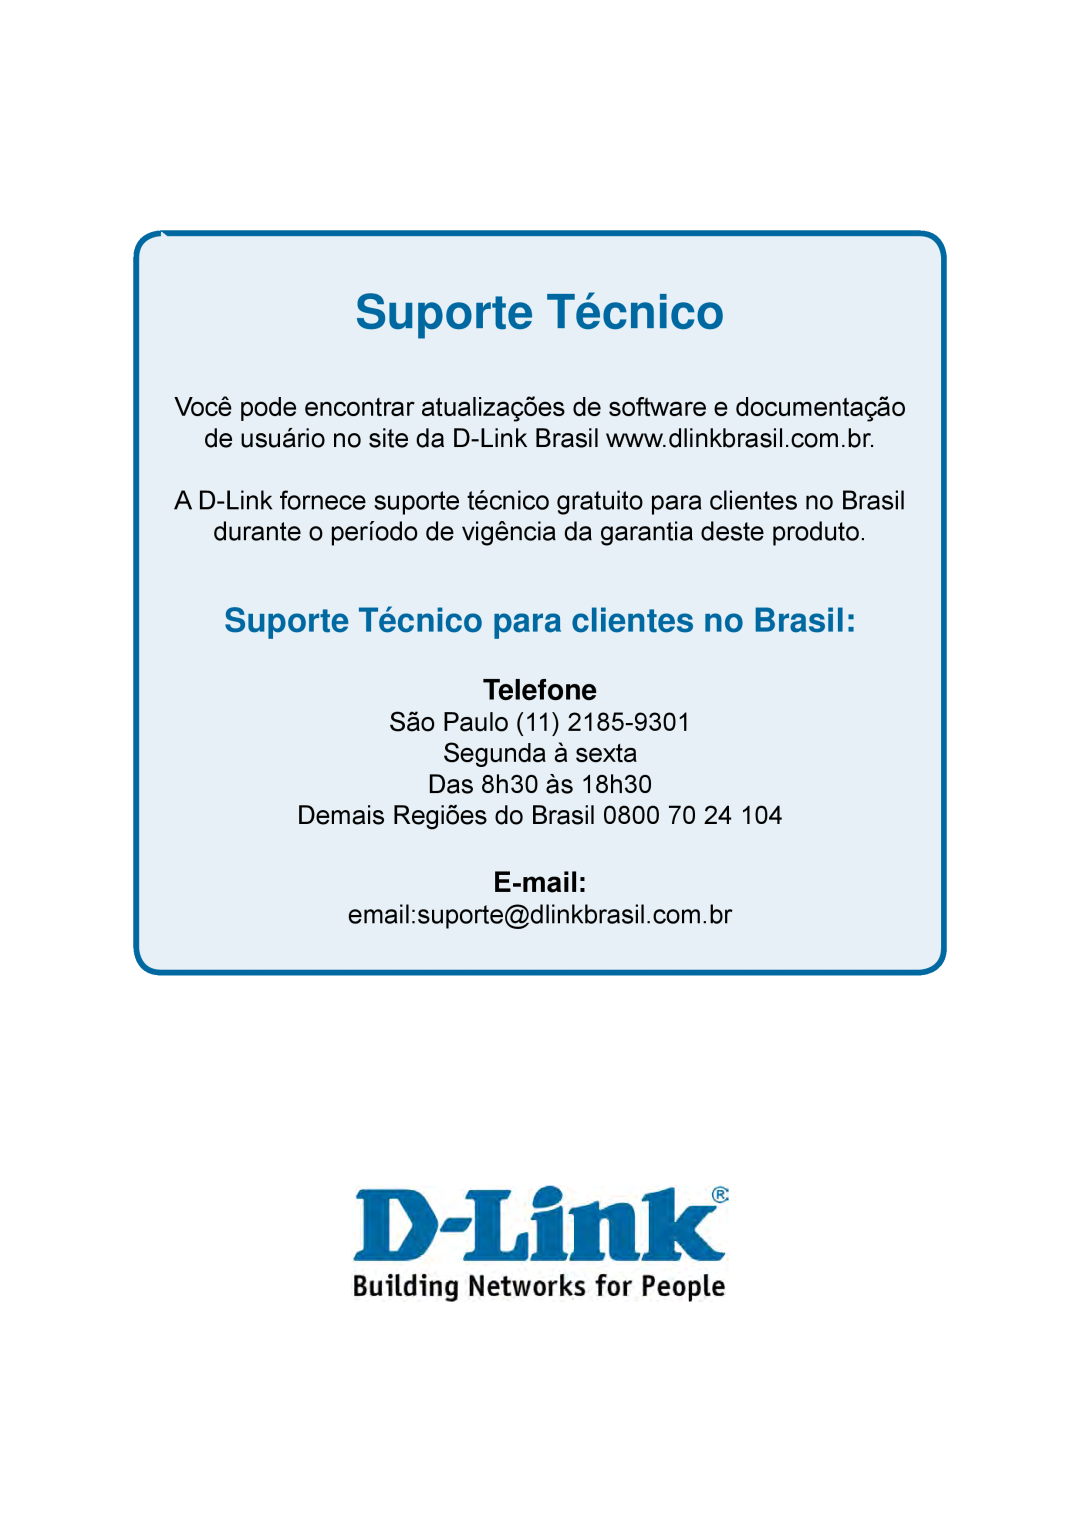 D-Link DES-1228P Suporte Técnico para clientes no Brasil, Telefone, E-mail, Demais Regiões do Brasil 0800 70 24 